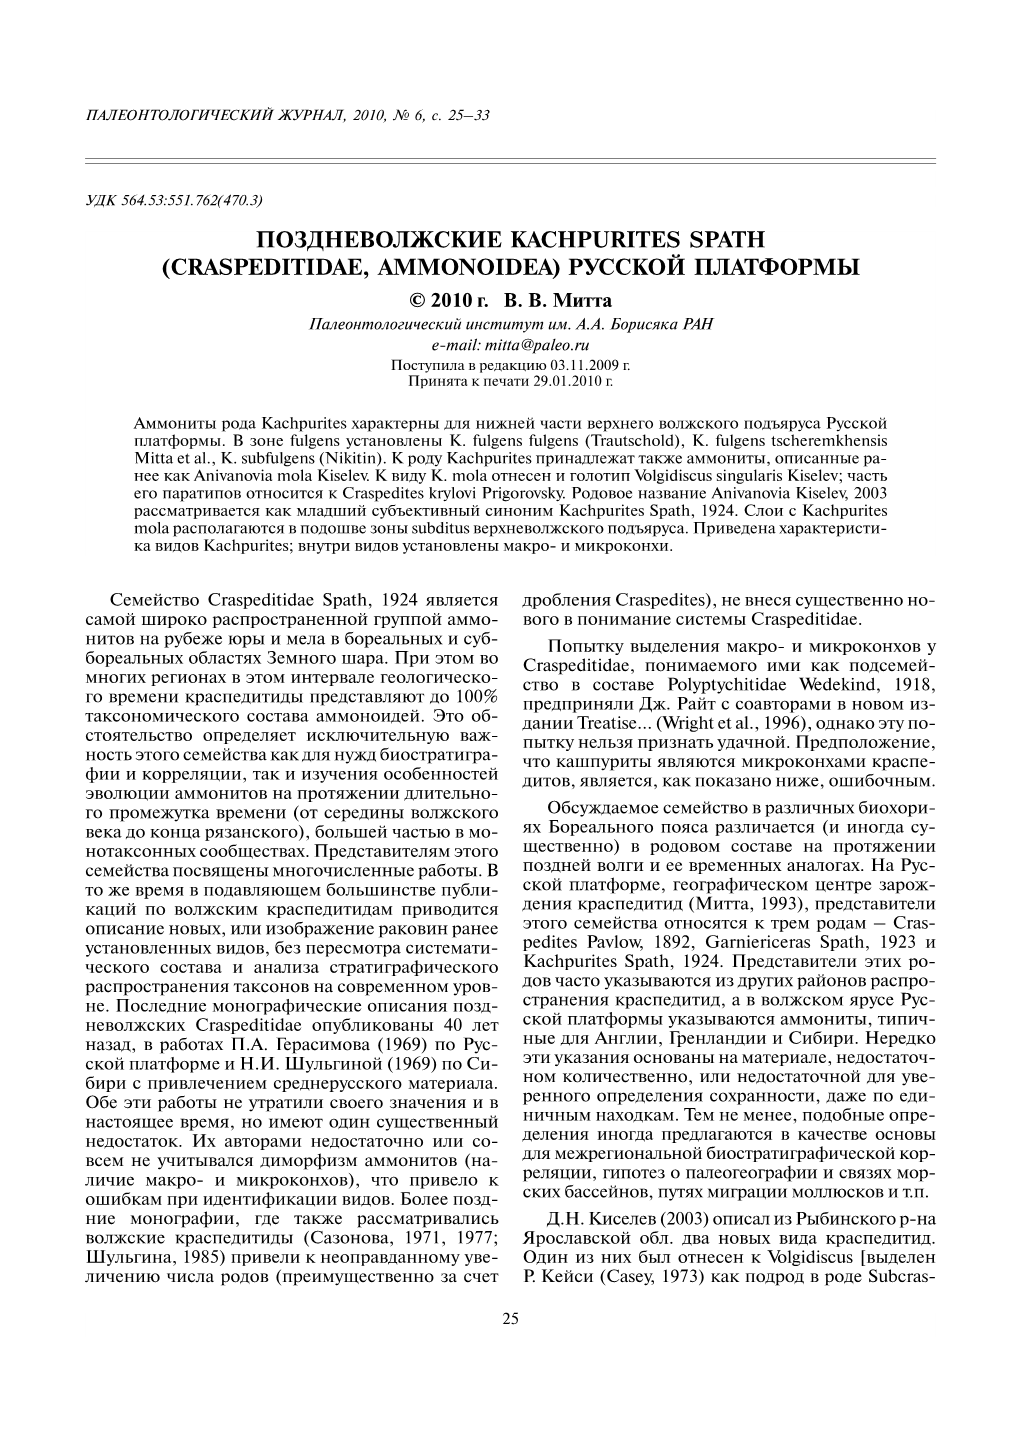 Поздневолжские Kachpurites Spath (Craspeditidae, Ammonoidea) Русской Платформы © 2010 Г